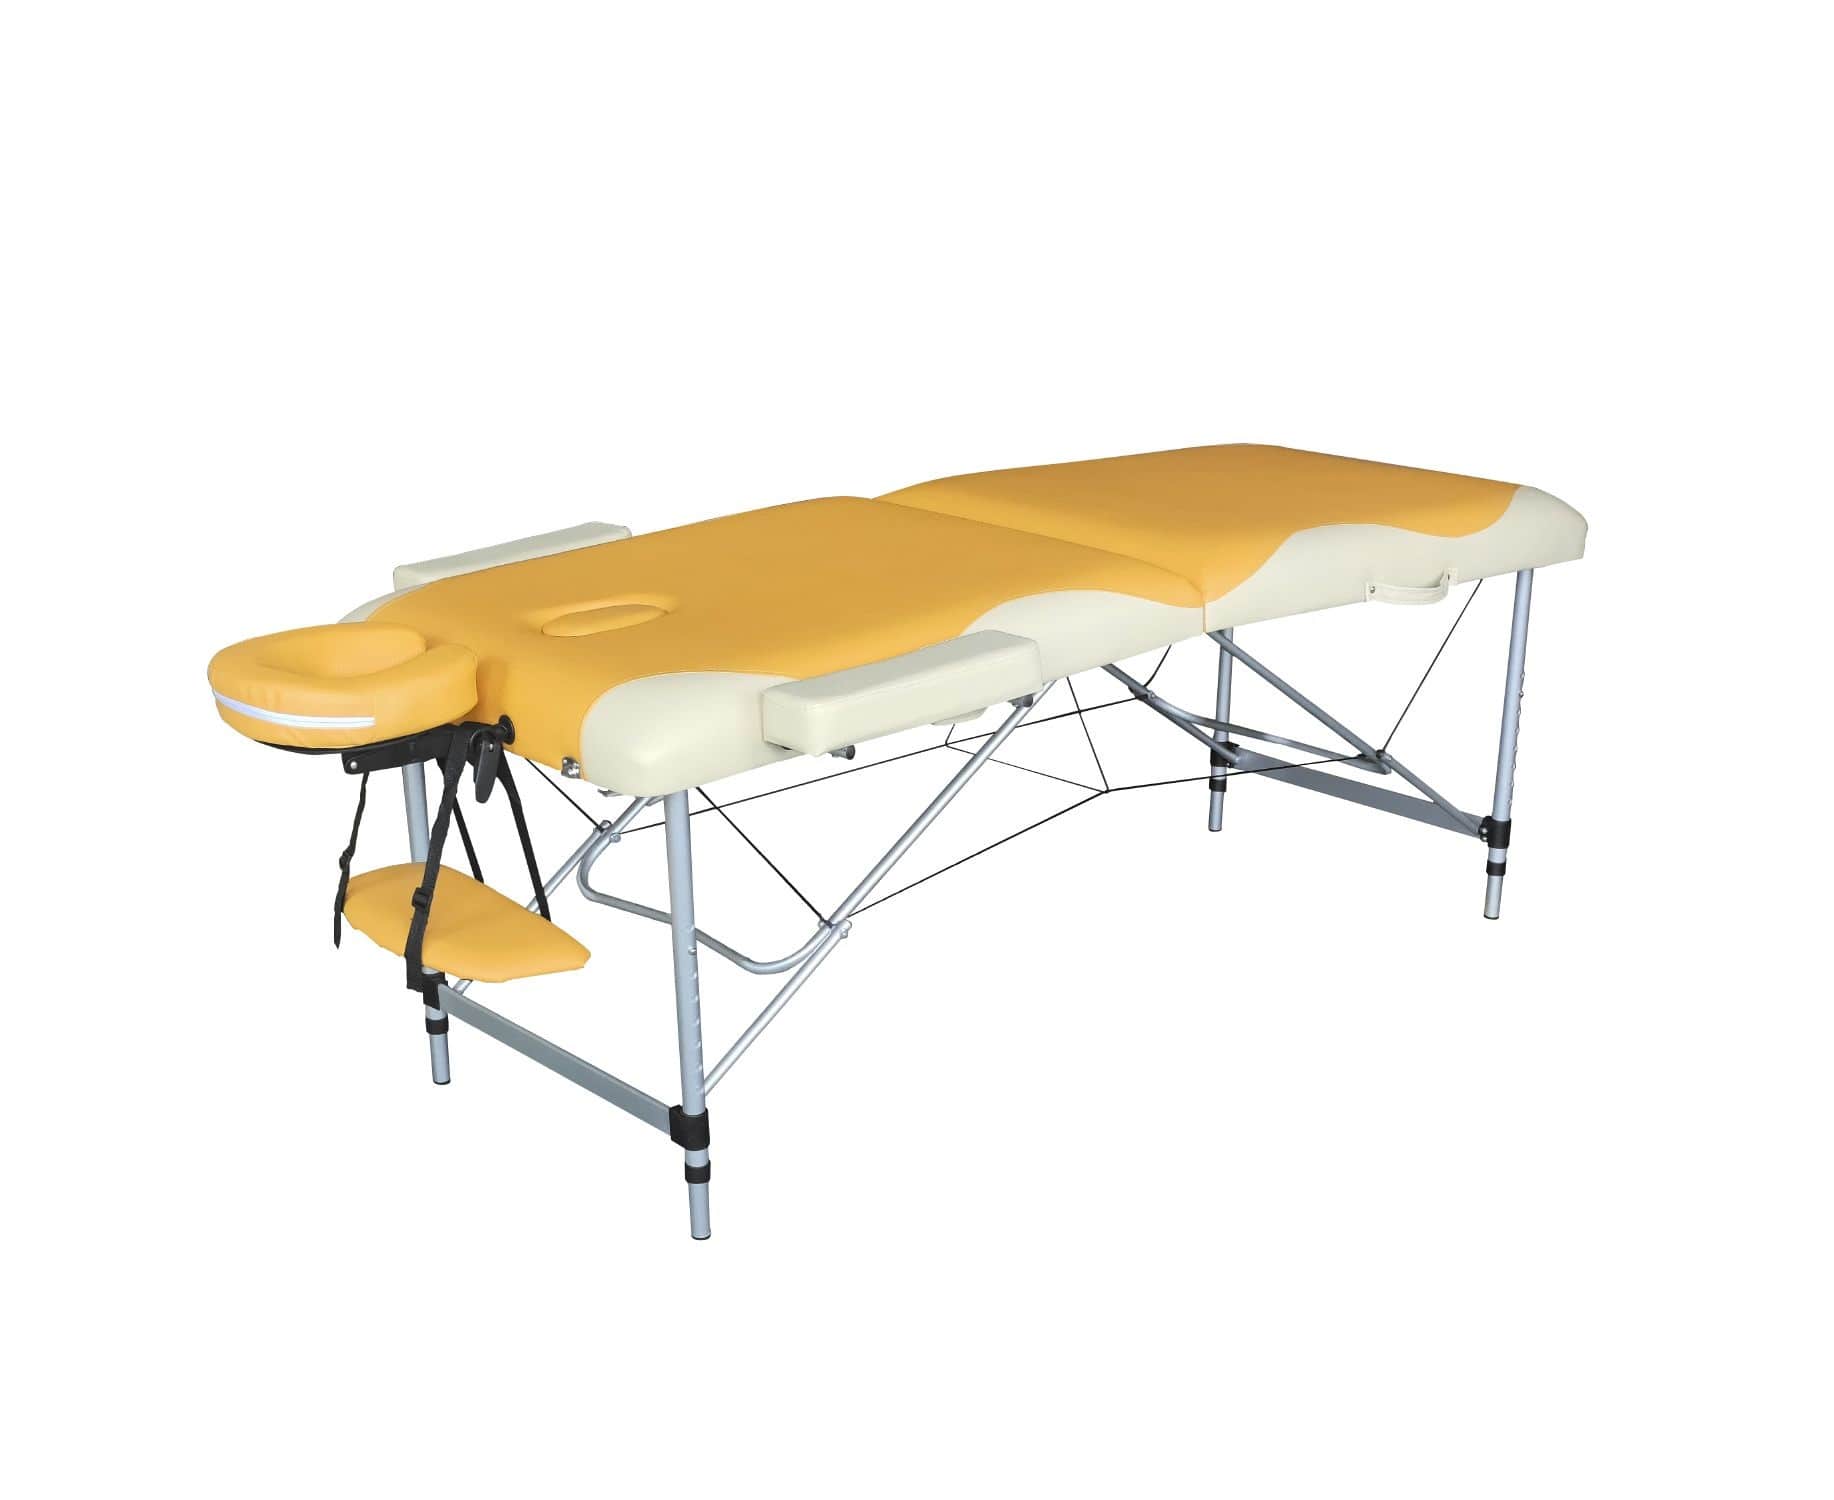 Складной массажный стол DFC Nirvana Elegant Premium, оранжевый/бежевый